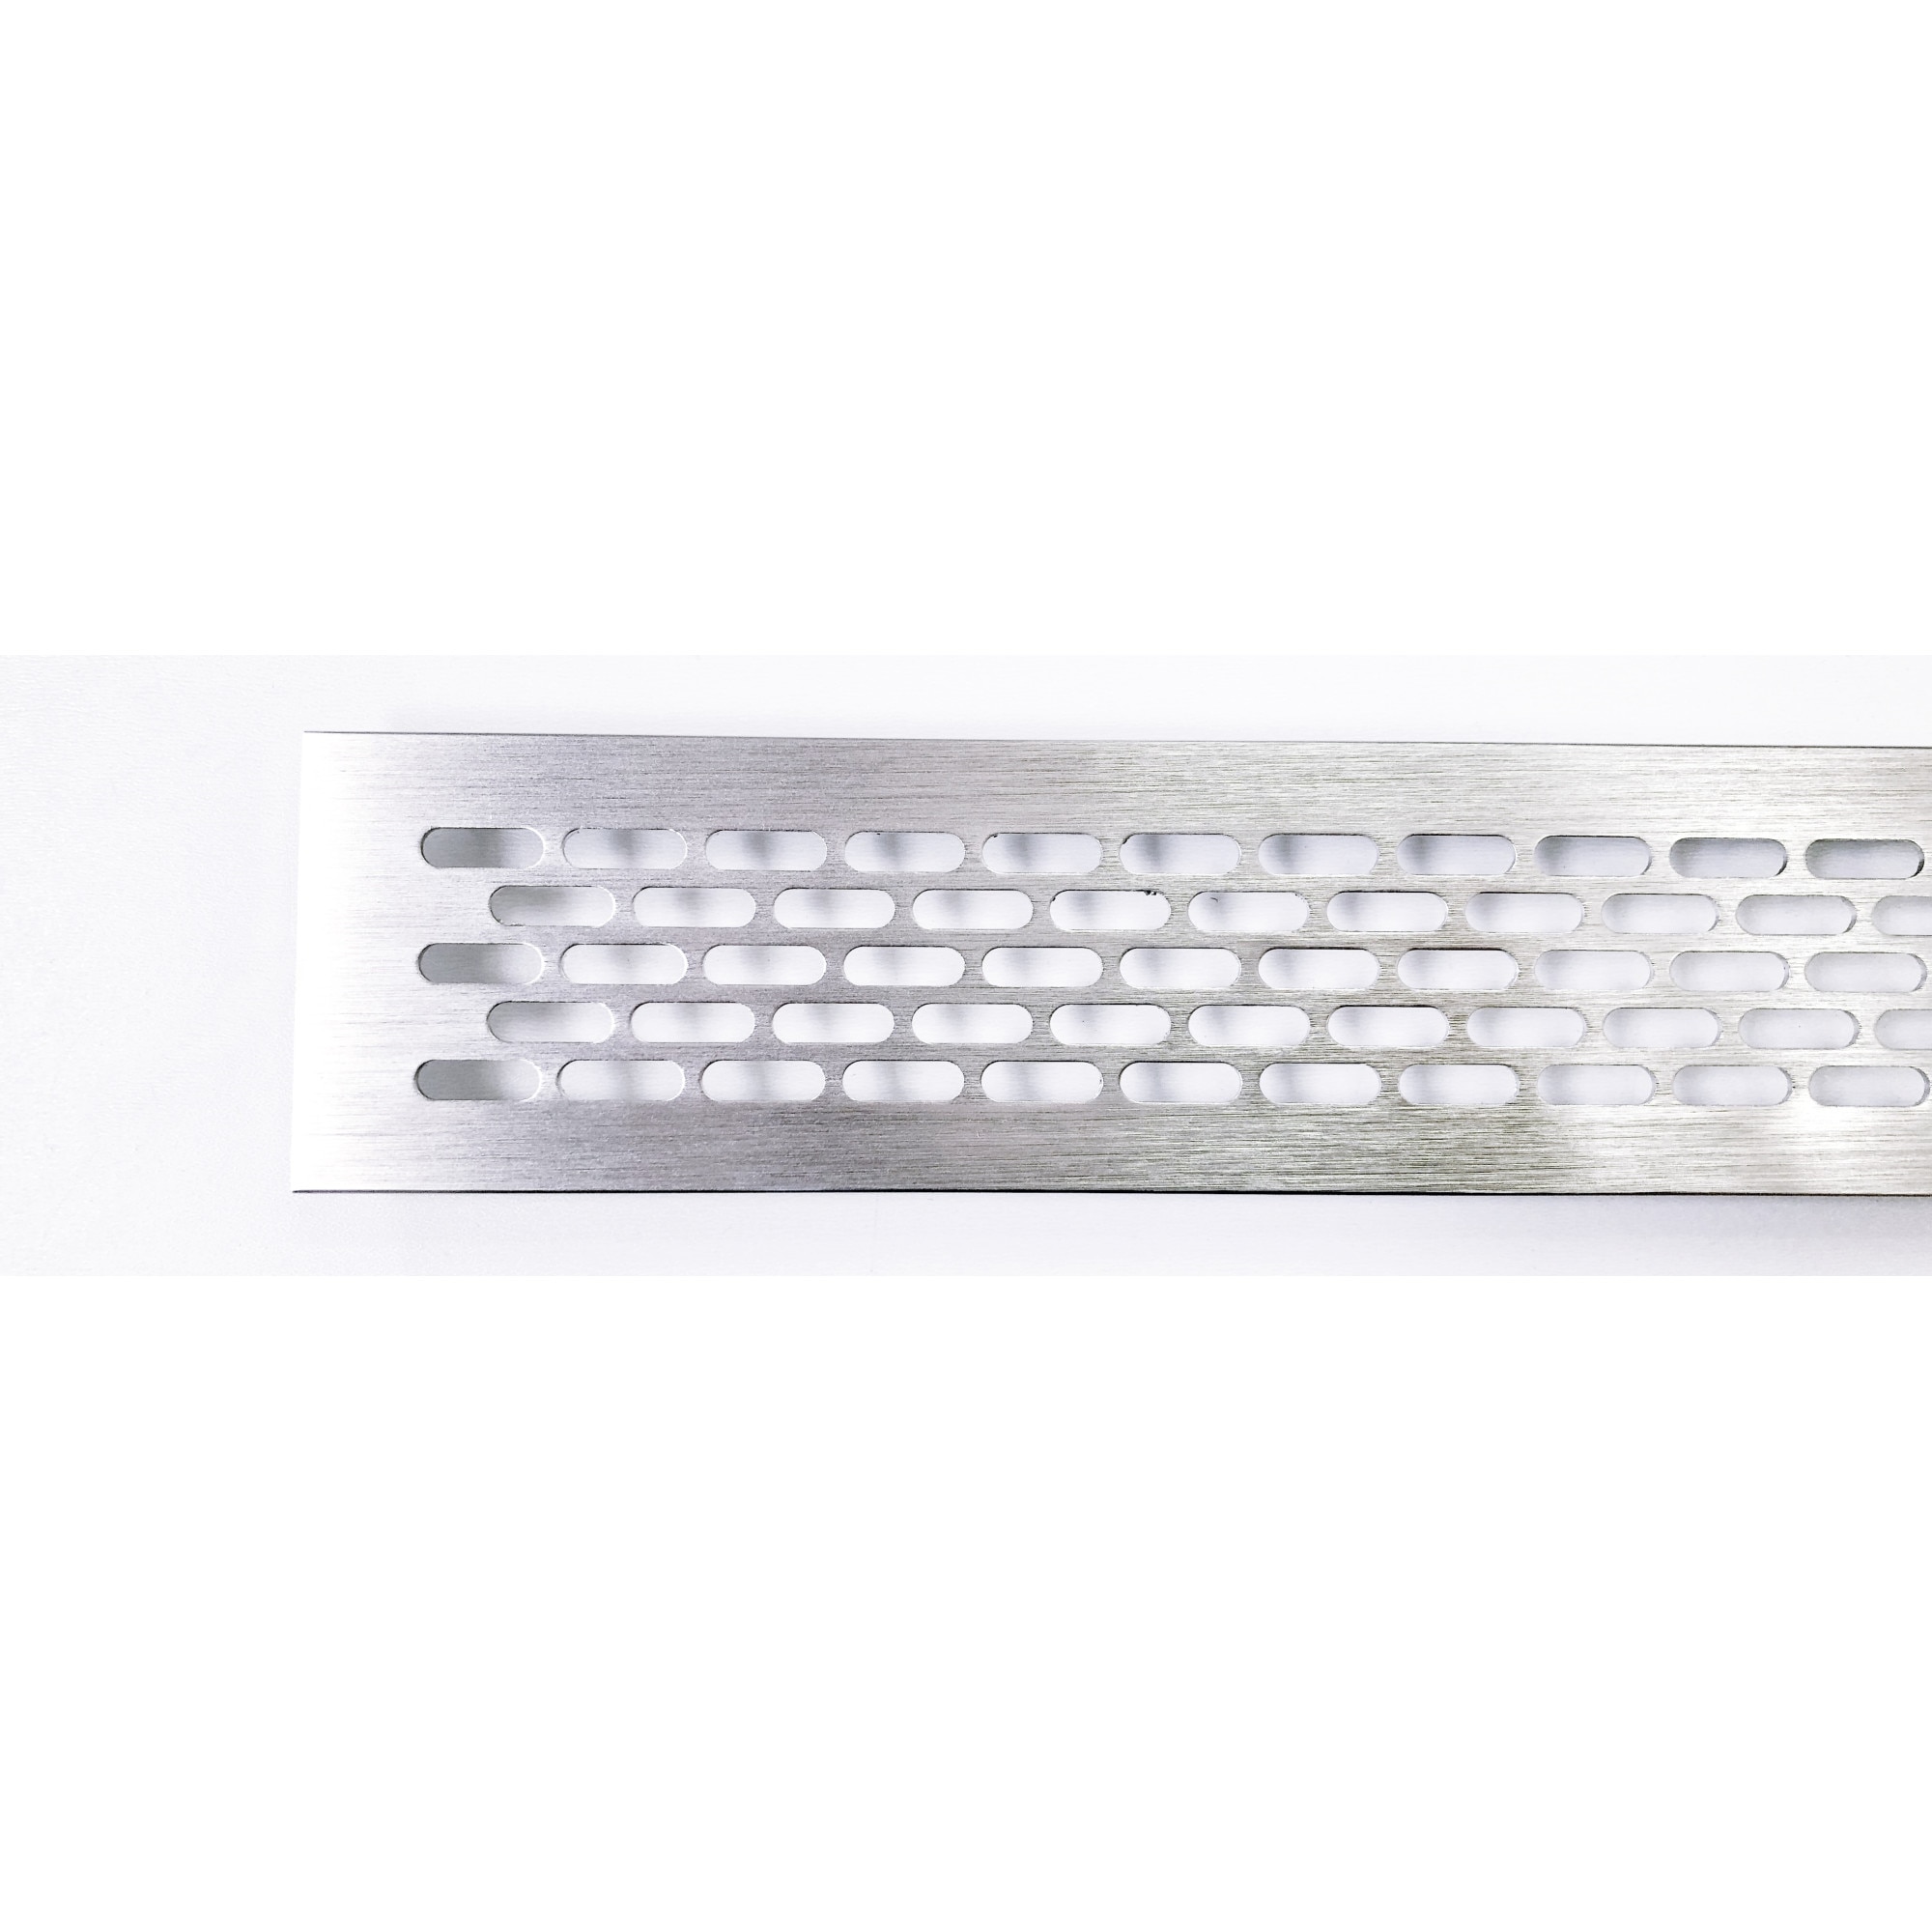 PLASTISAL - Papel Aluminio Grueso para Estufa, 90x60cm